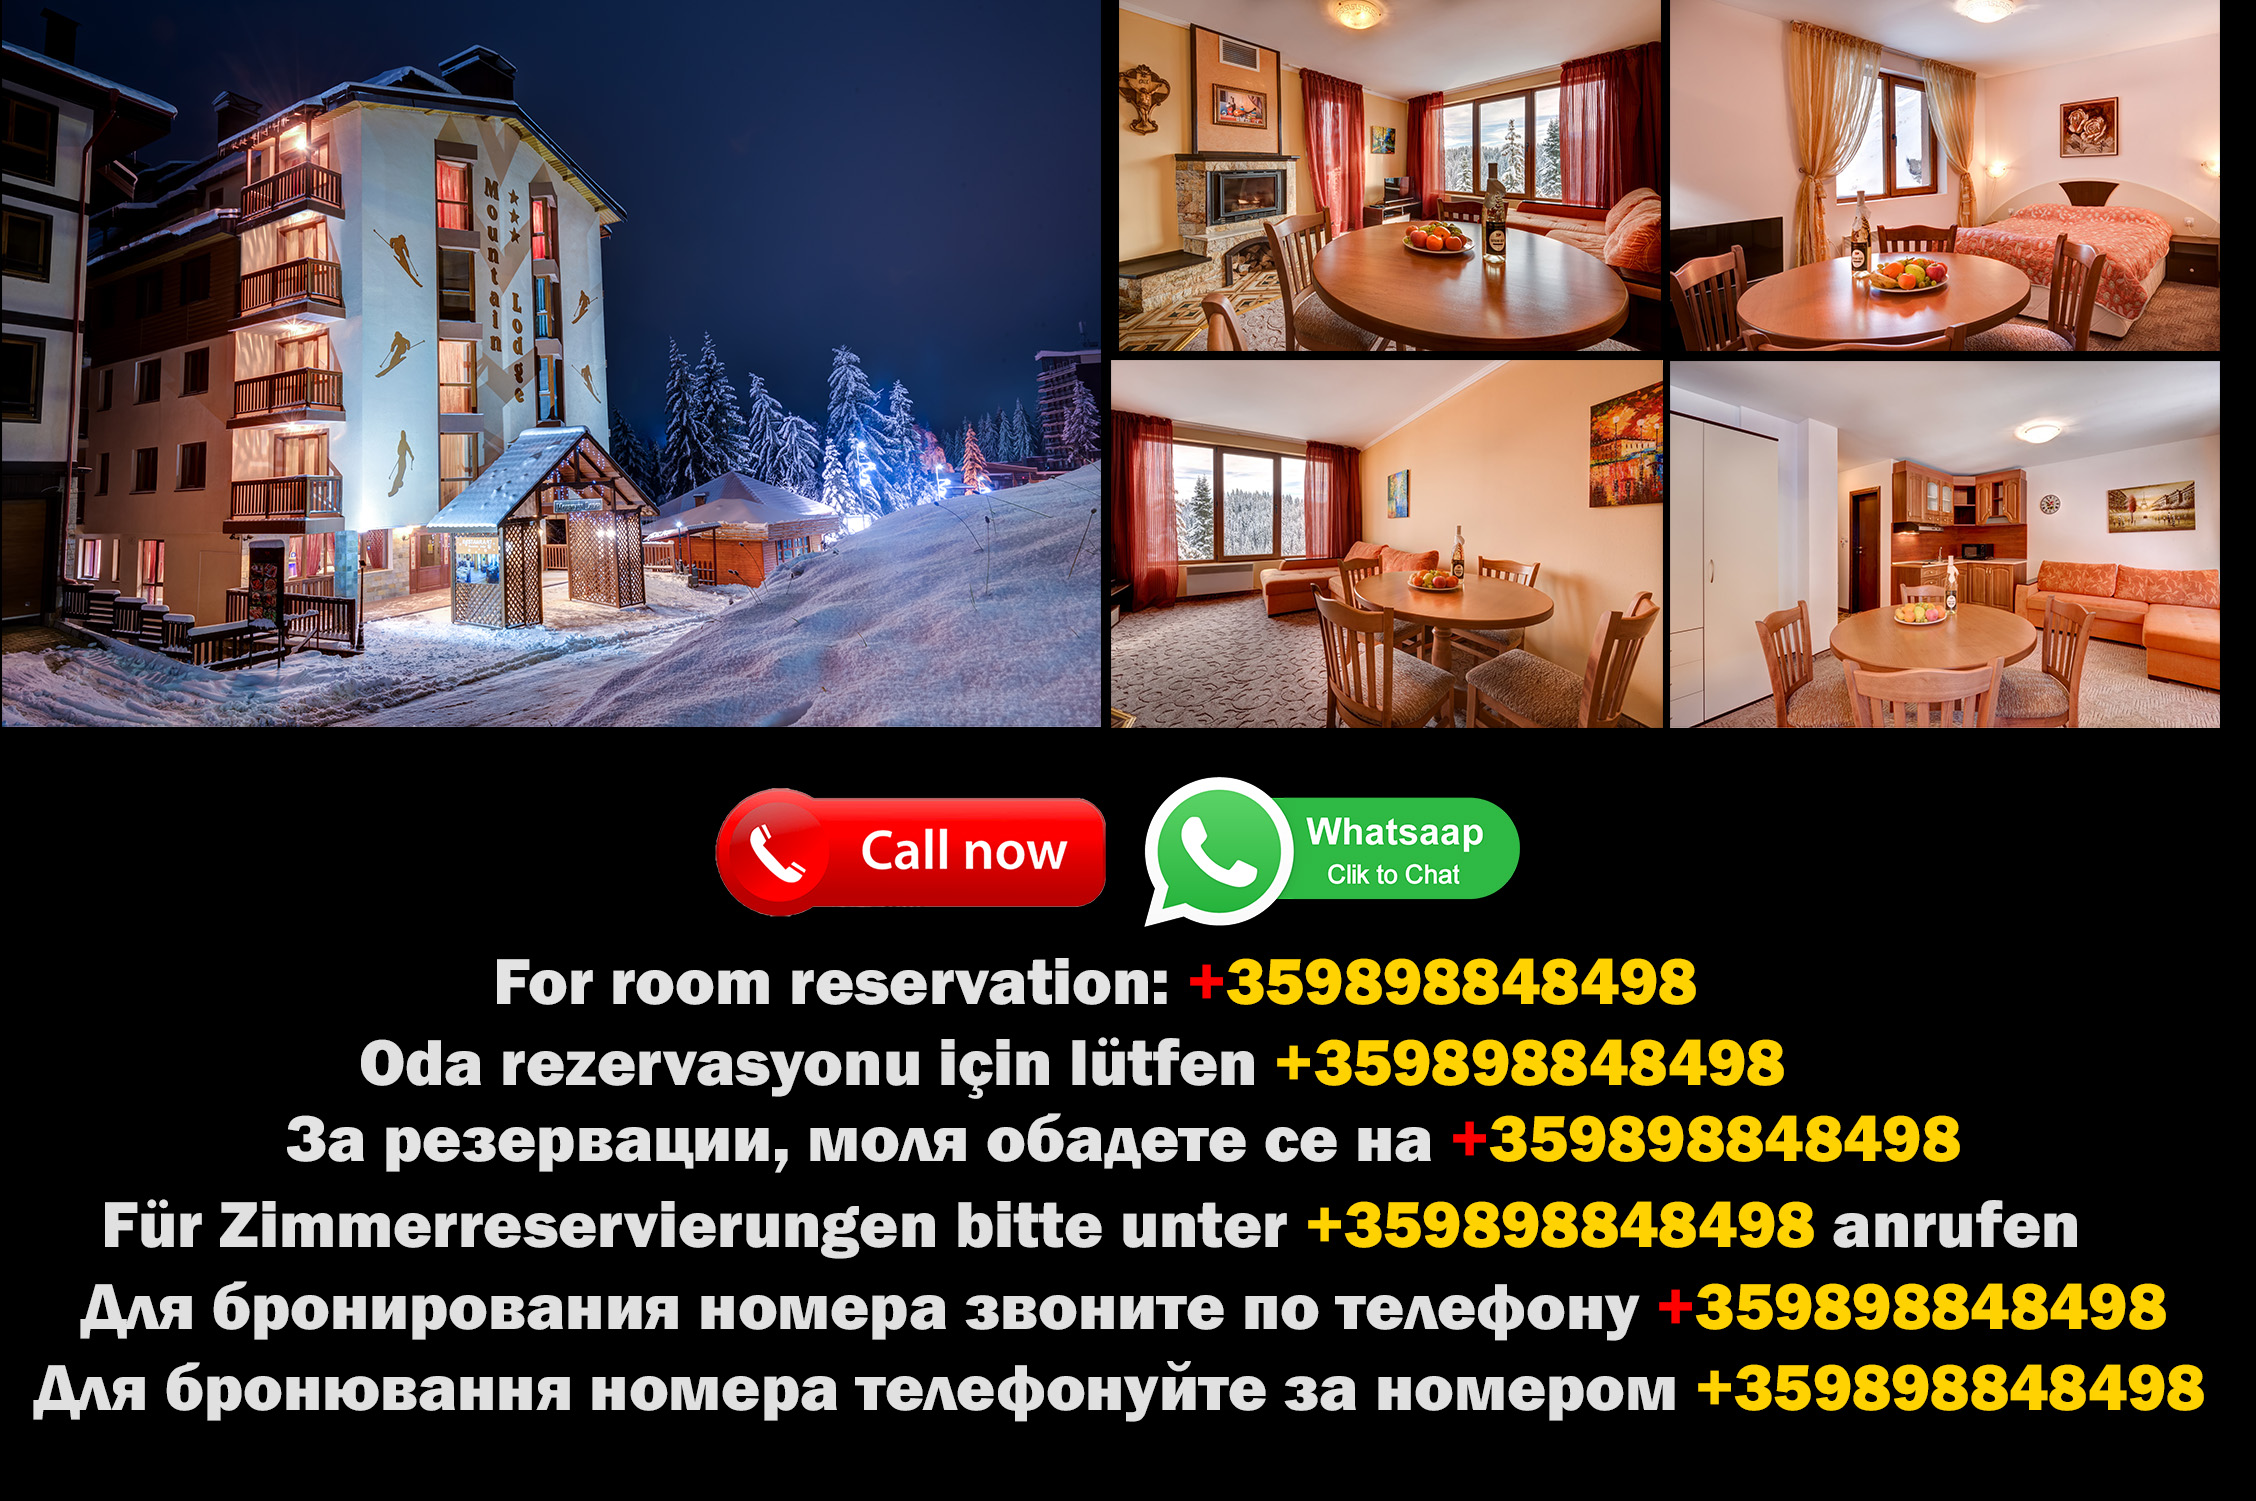 Entdecken Sie den Charme der Pamporovo Hotels in Pamporovo - im Herzen des Mountain Lodge Hotels!